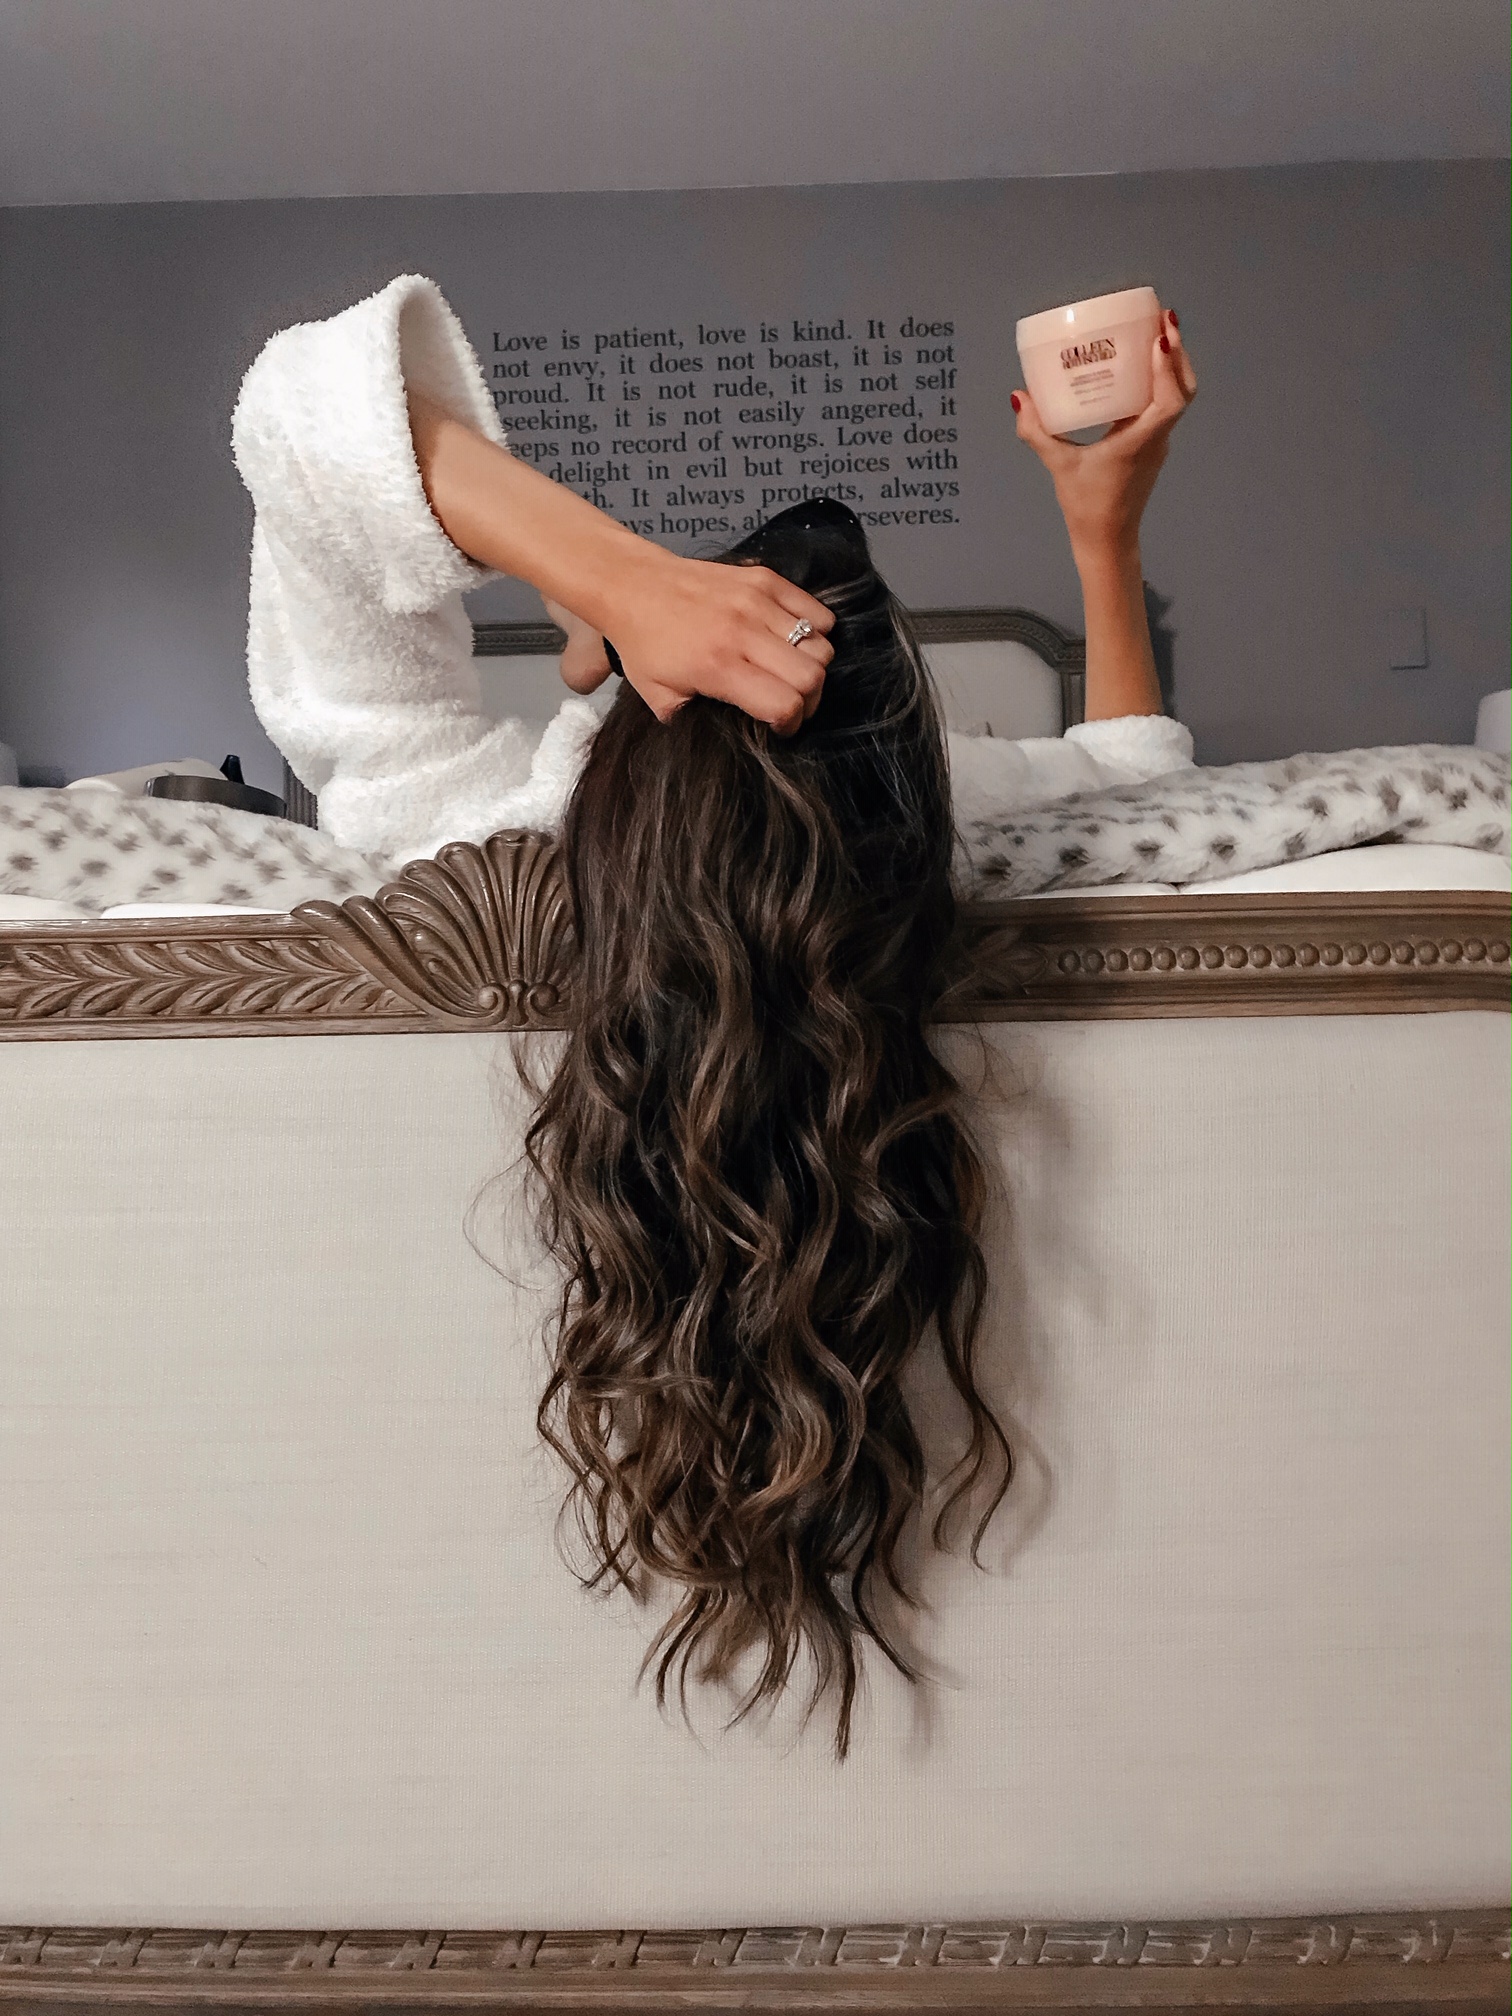 Cách dưỡng tóc đơn giản và hiệu quả tại nhà